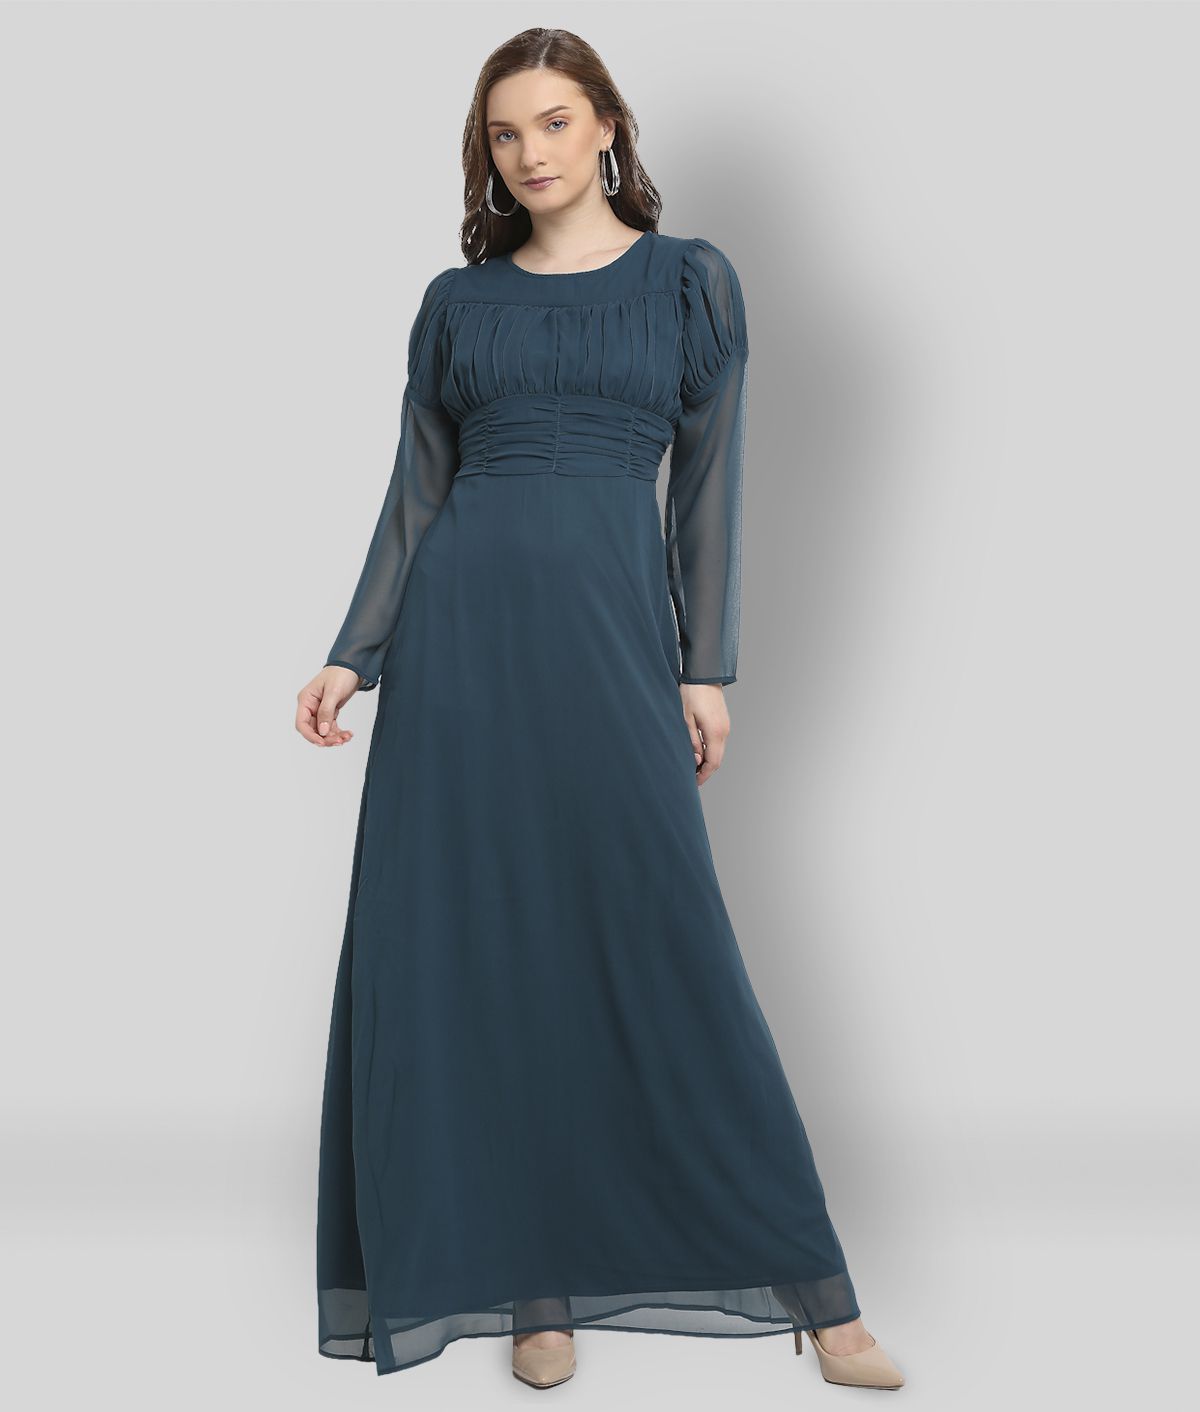 La Zoire - Blue Cotton Blend Women's A- line Dress ( Pack of 1 )